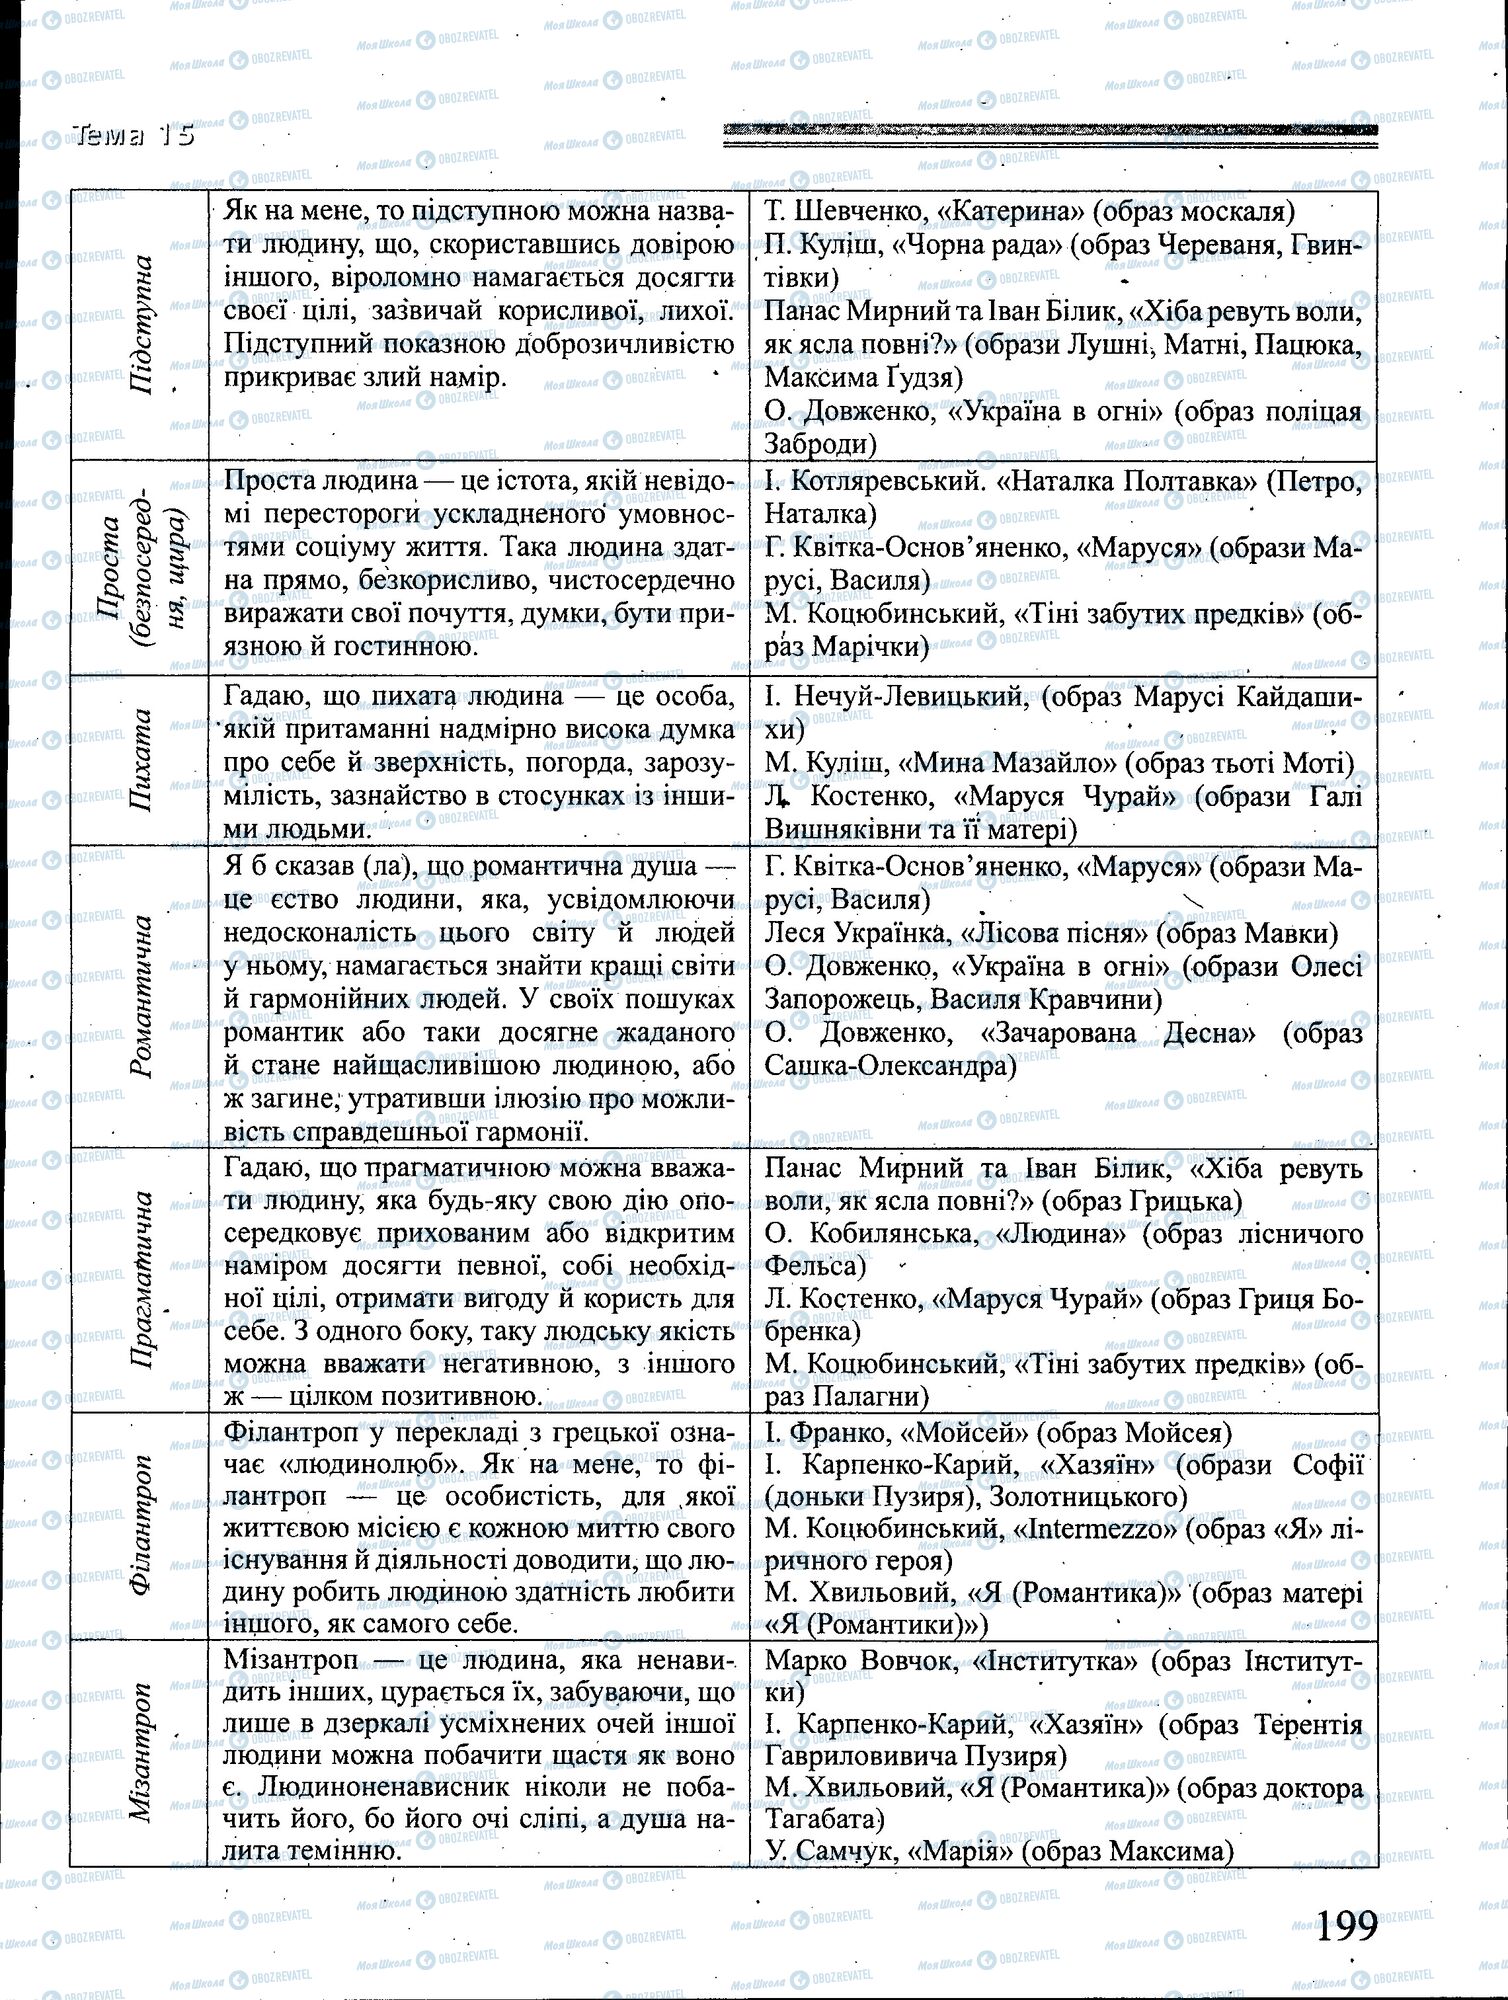 ДПА Укр мова 4 класс страница 199